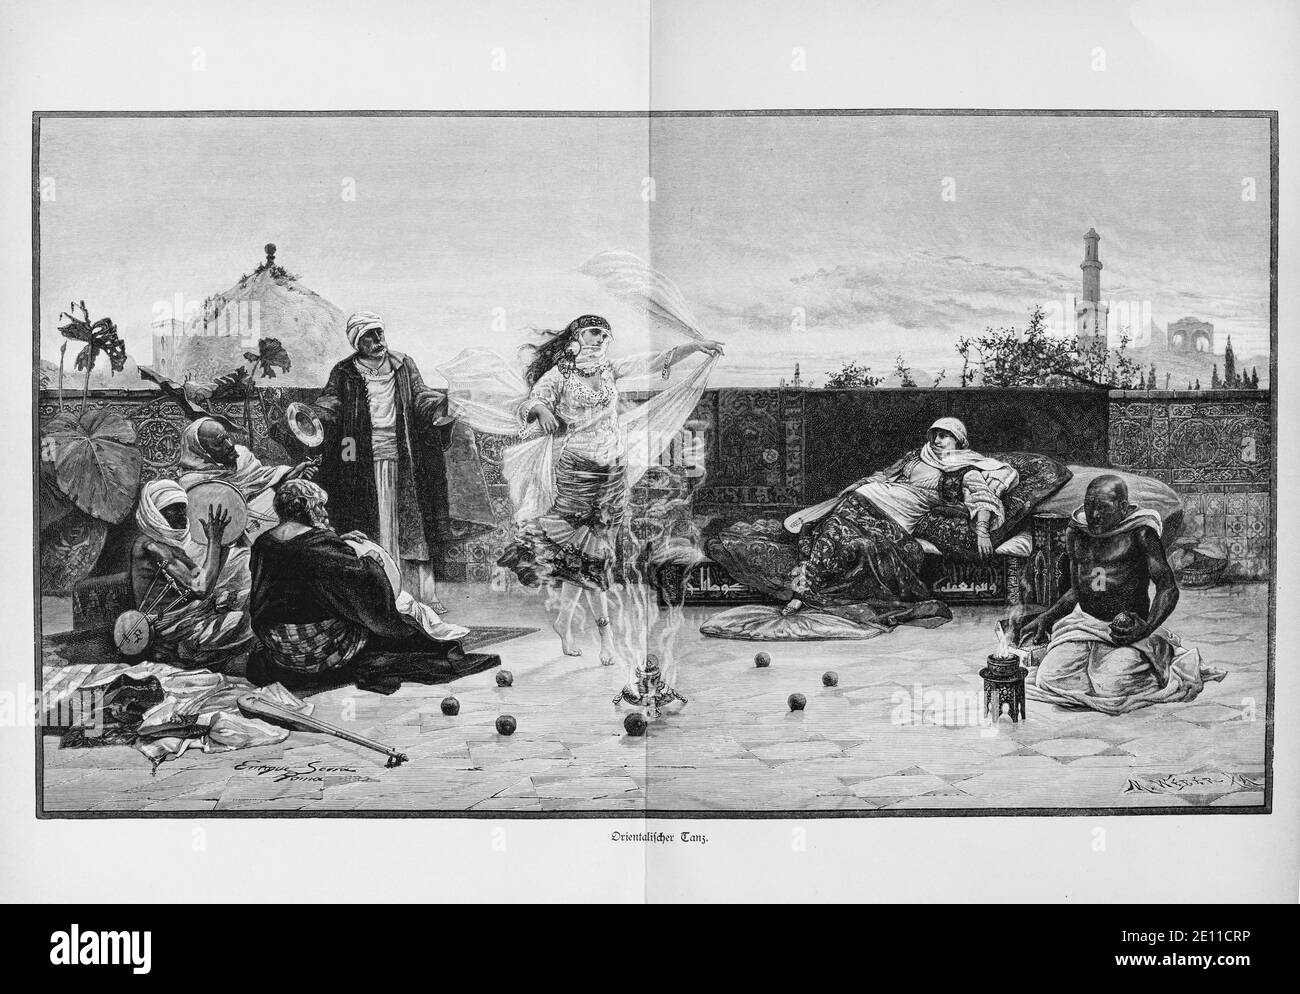 'Orientalischer Tanz', Dancer showing an Oriental dance, open fire ans spectators, Constantinople, Turkey, from 'Die Hauptstädte der Welt', 1897 Stock Photo